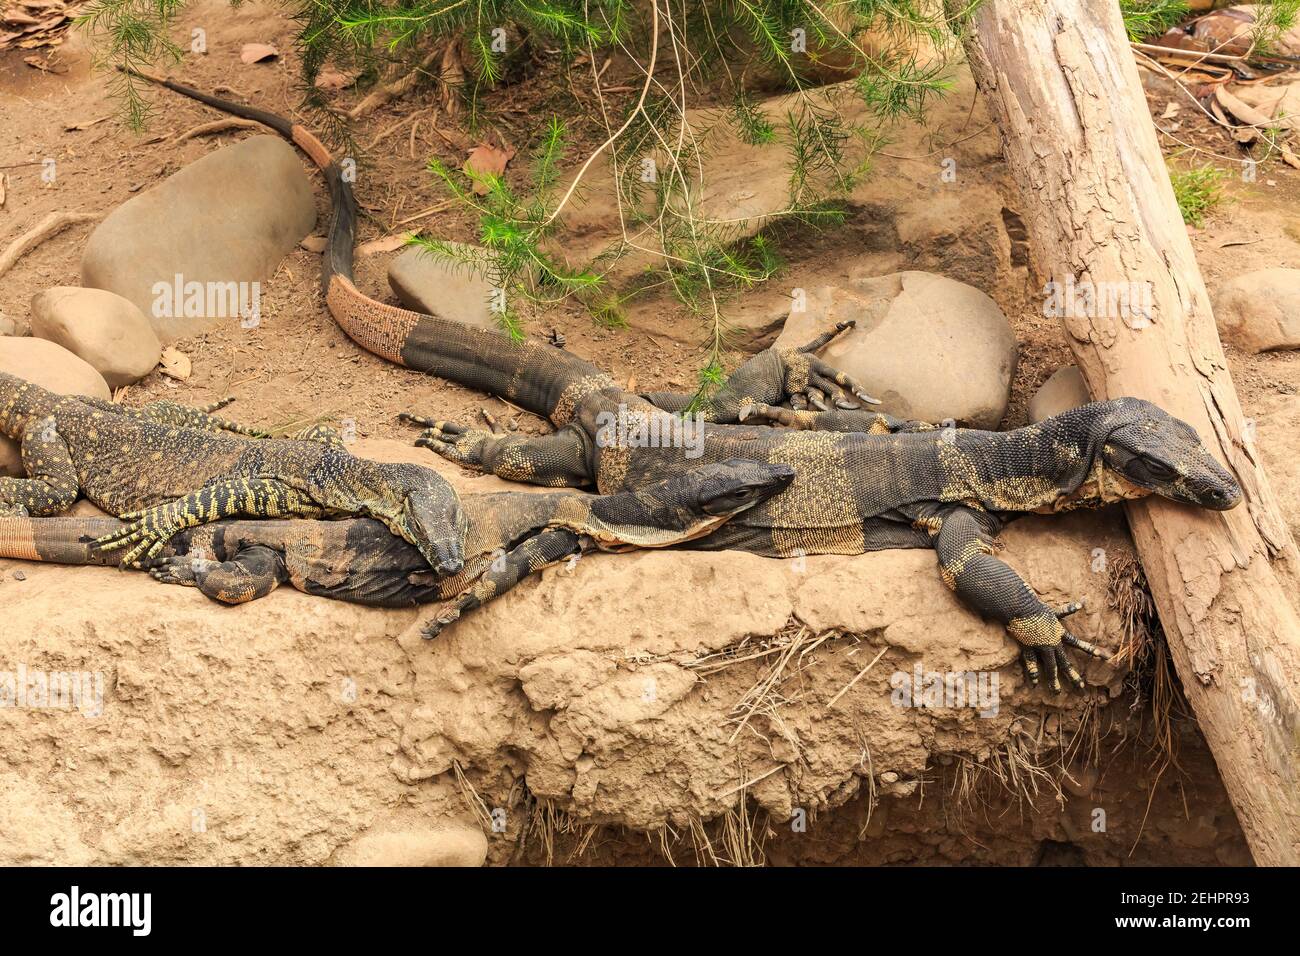 Una familia de monitores de encaje, o goannas árboles, grandes reptiles nativos de Australia, descansando juntos en una orilla del río Foto de stock